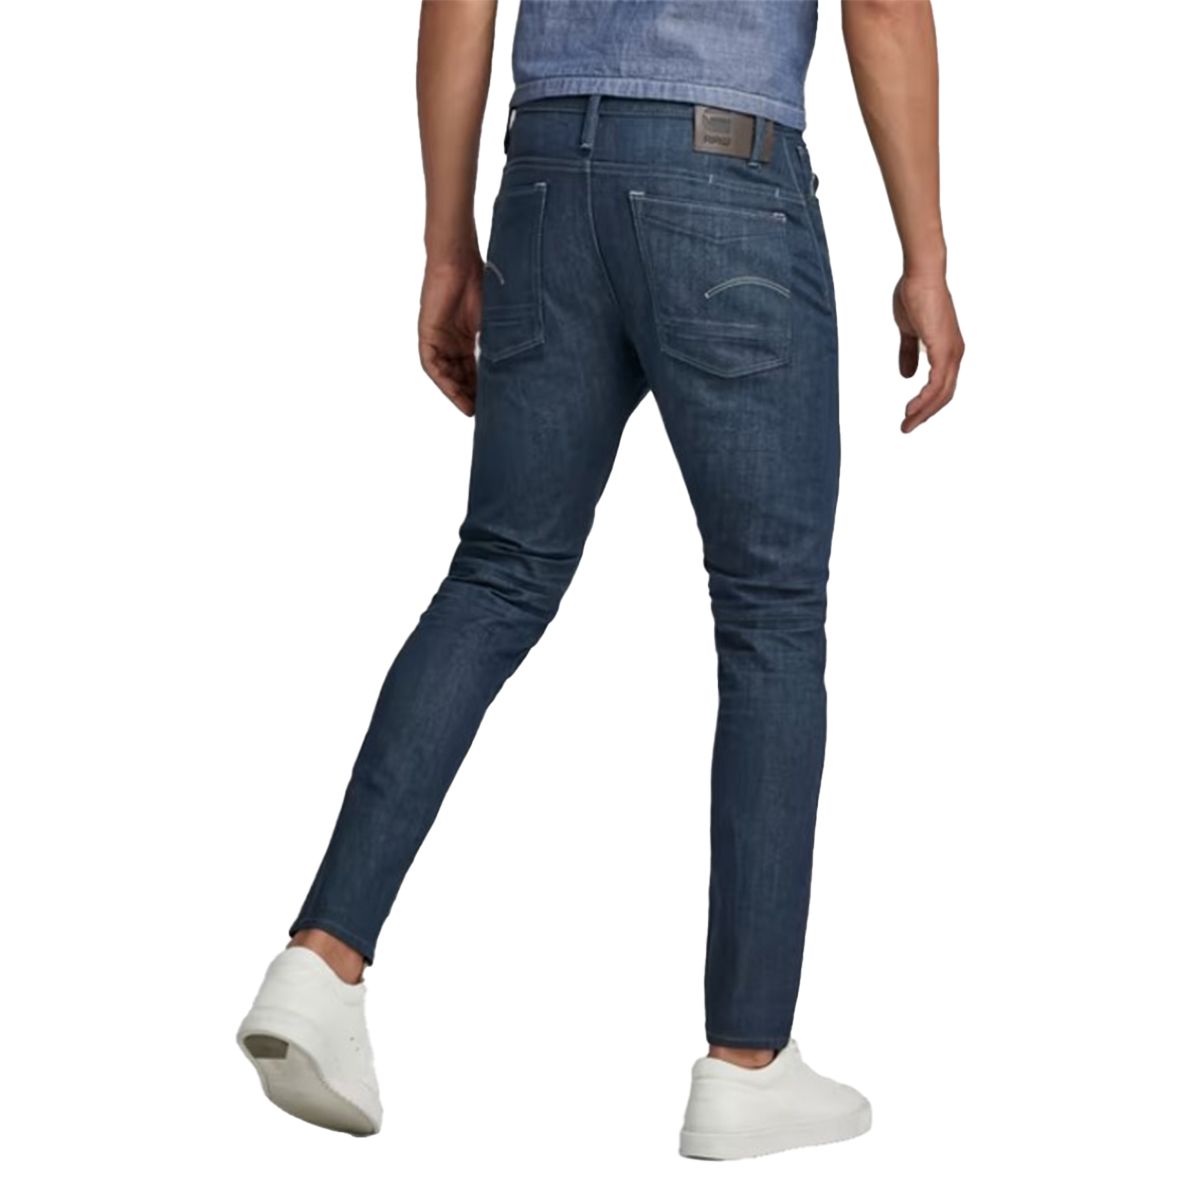 Scutar 3D Slim Jeans Worn In Leaden